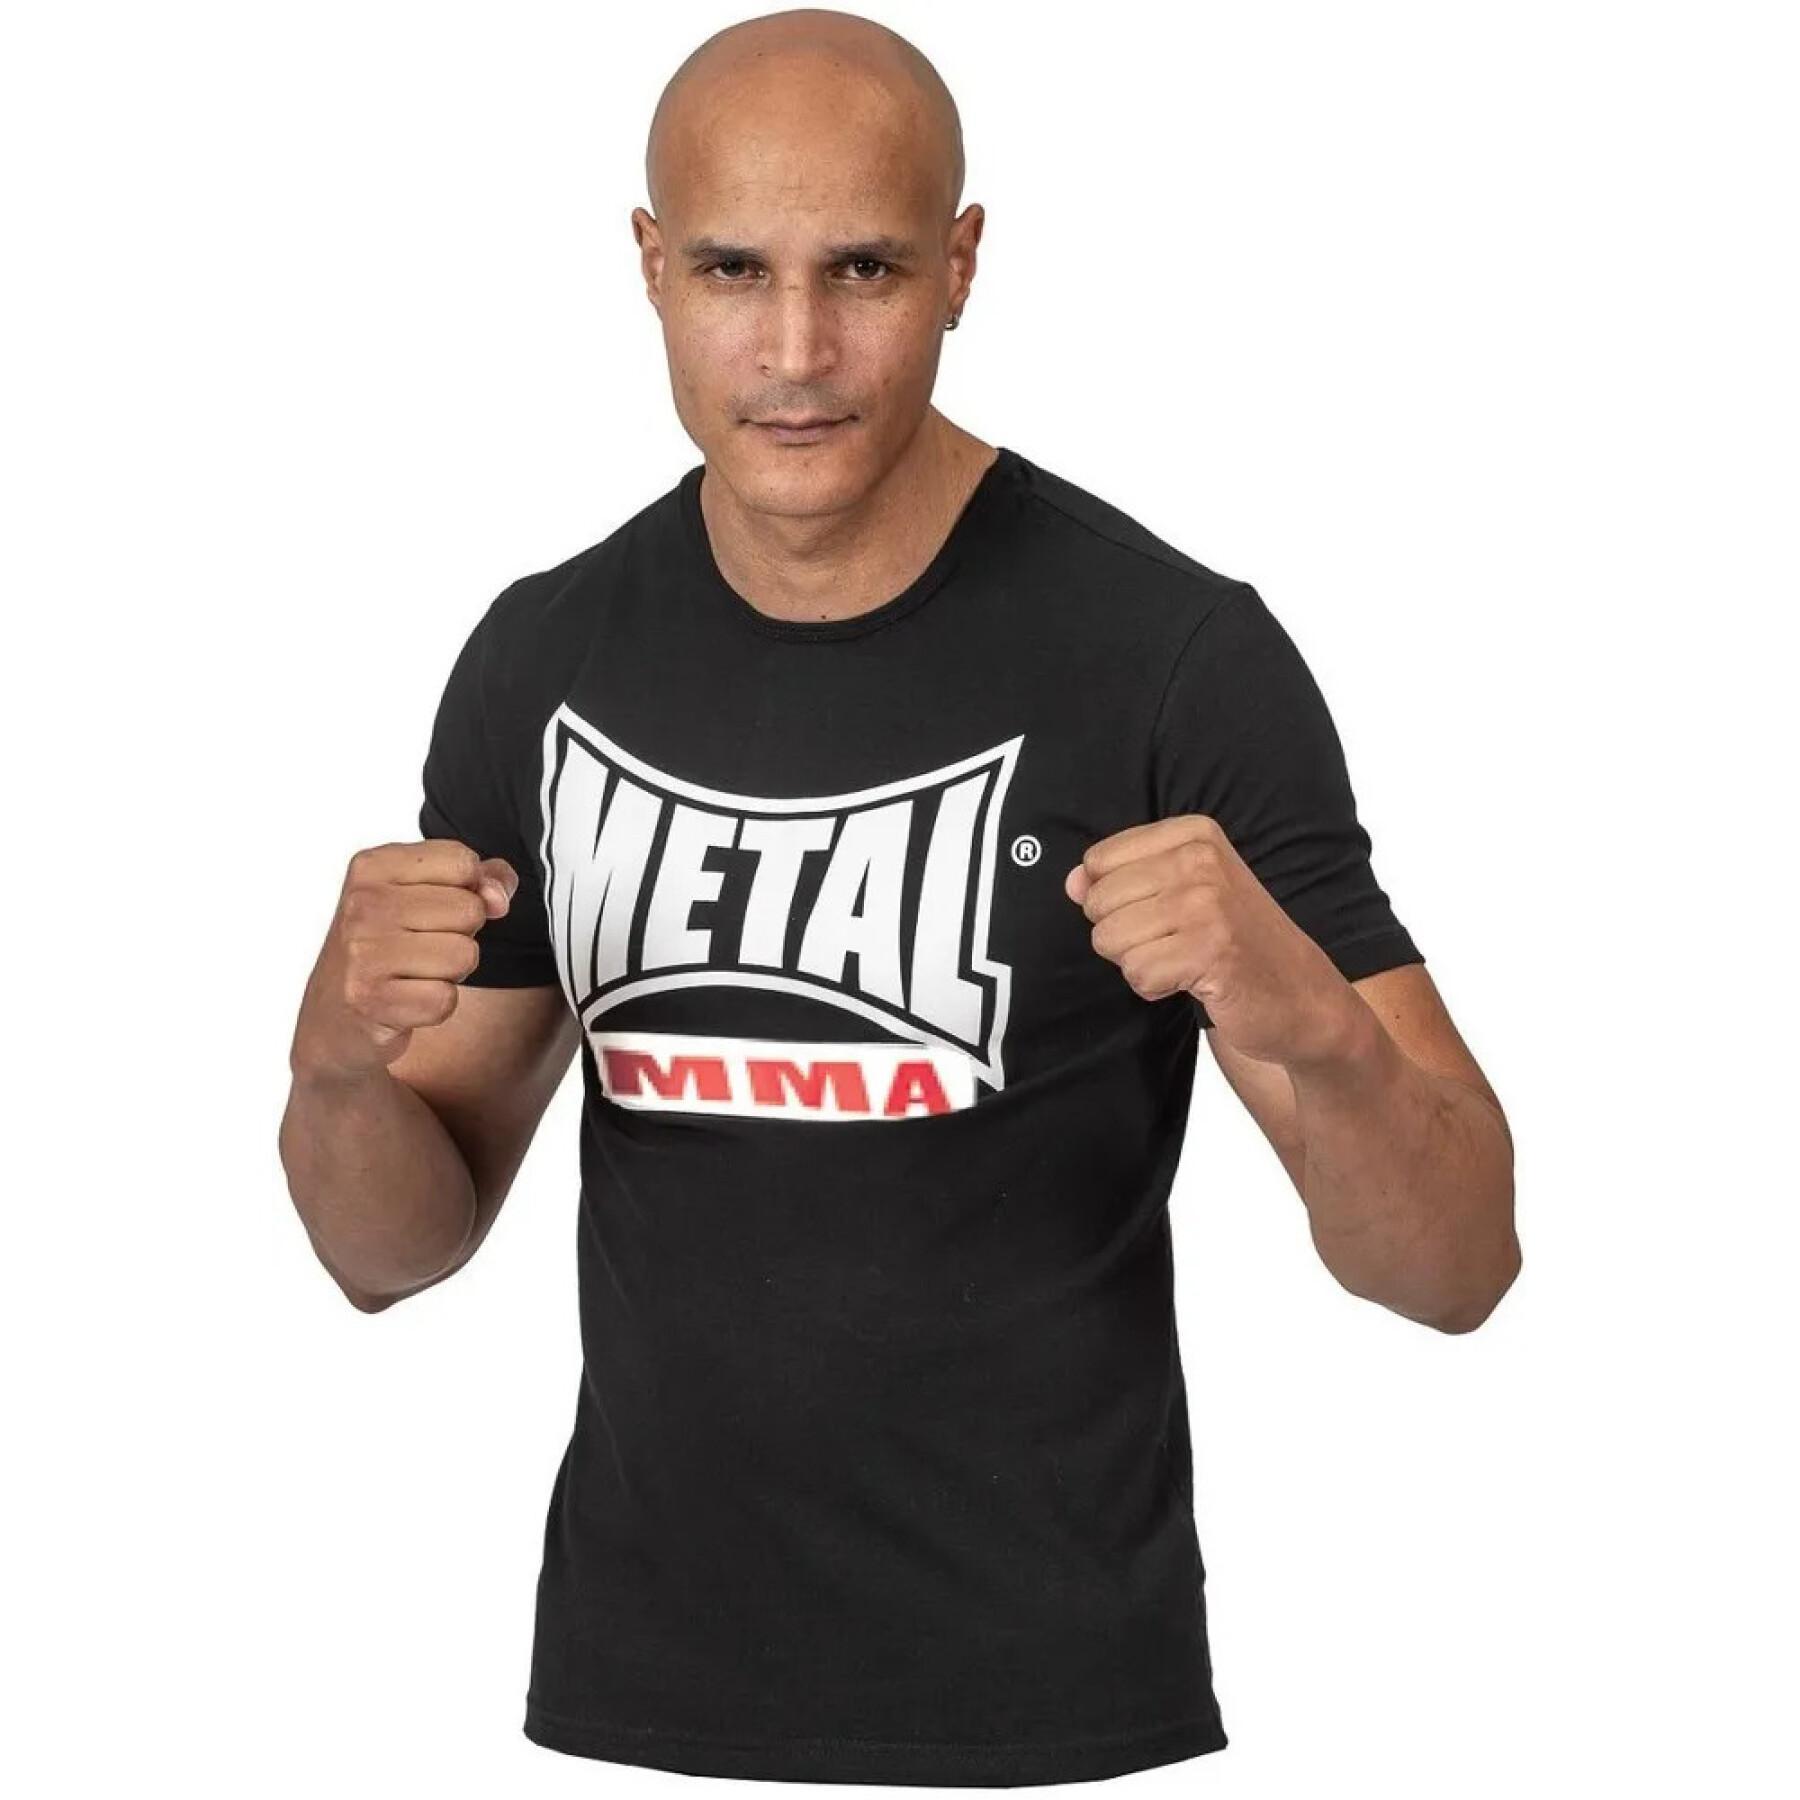 T-shirt mma Metal Boxe visual